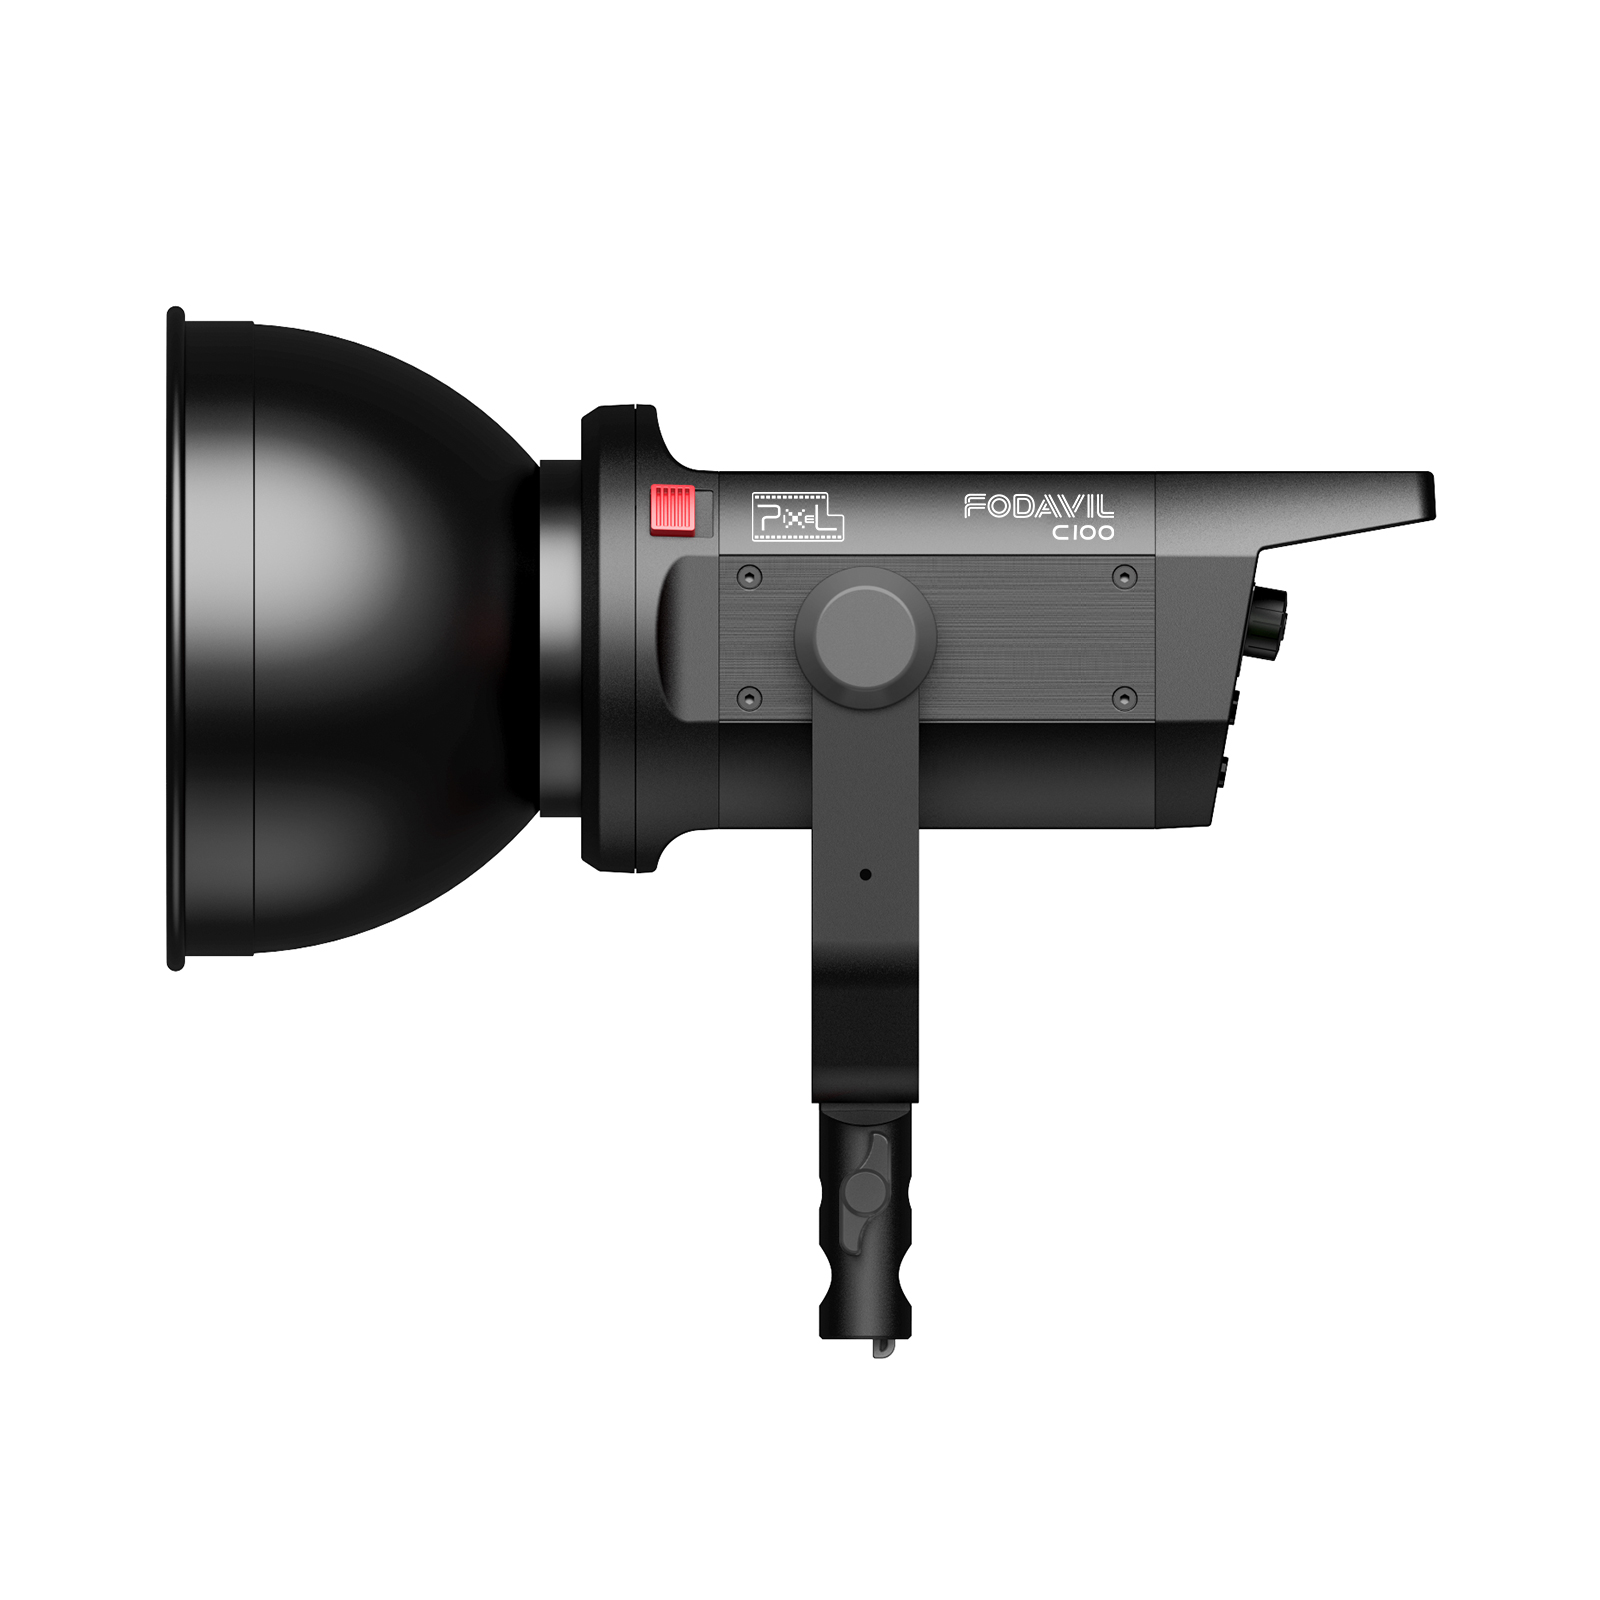 品色PixelC100 COB摄影灯,轻薄便携,智能特效,灵活调色